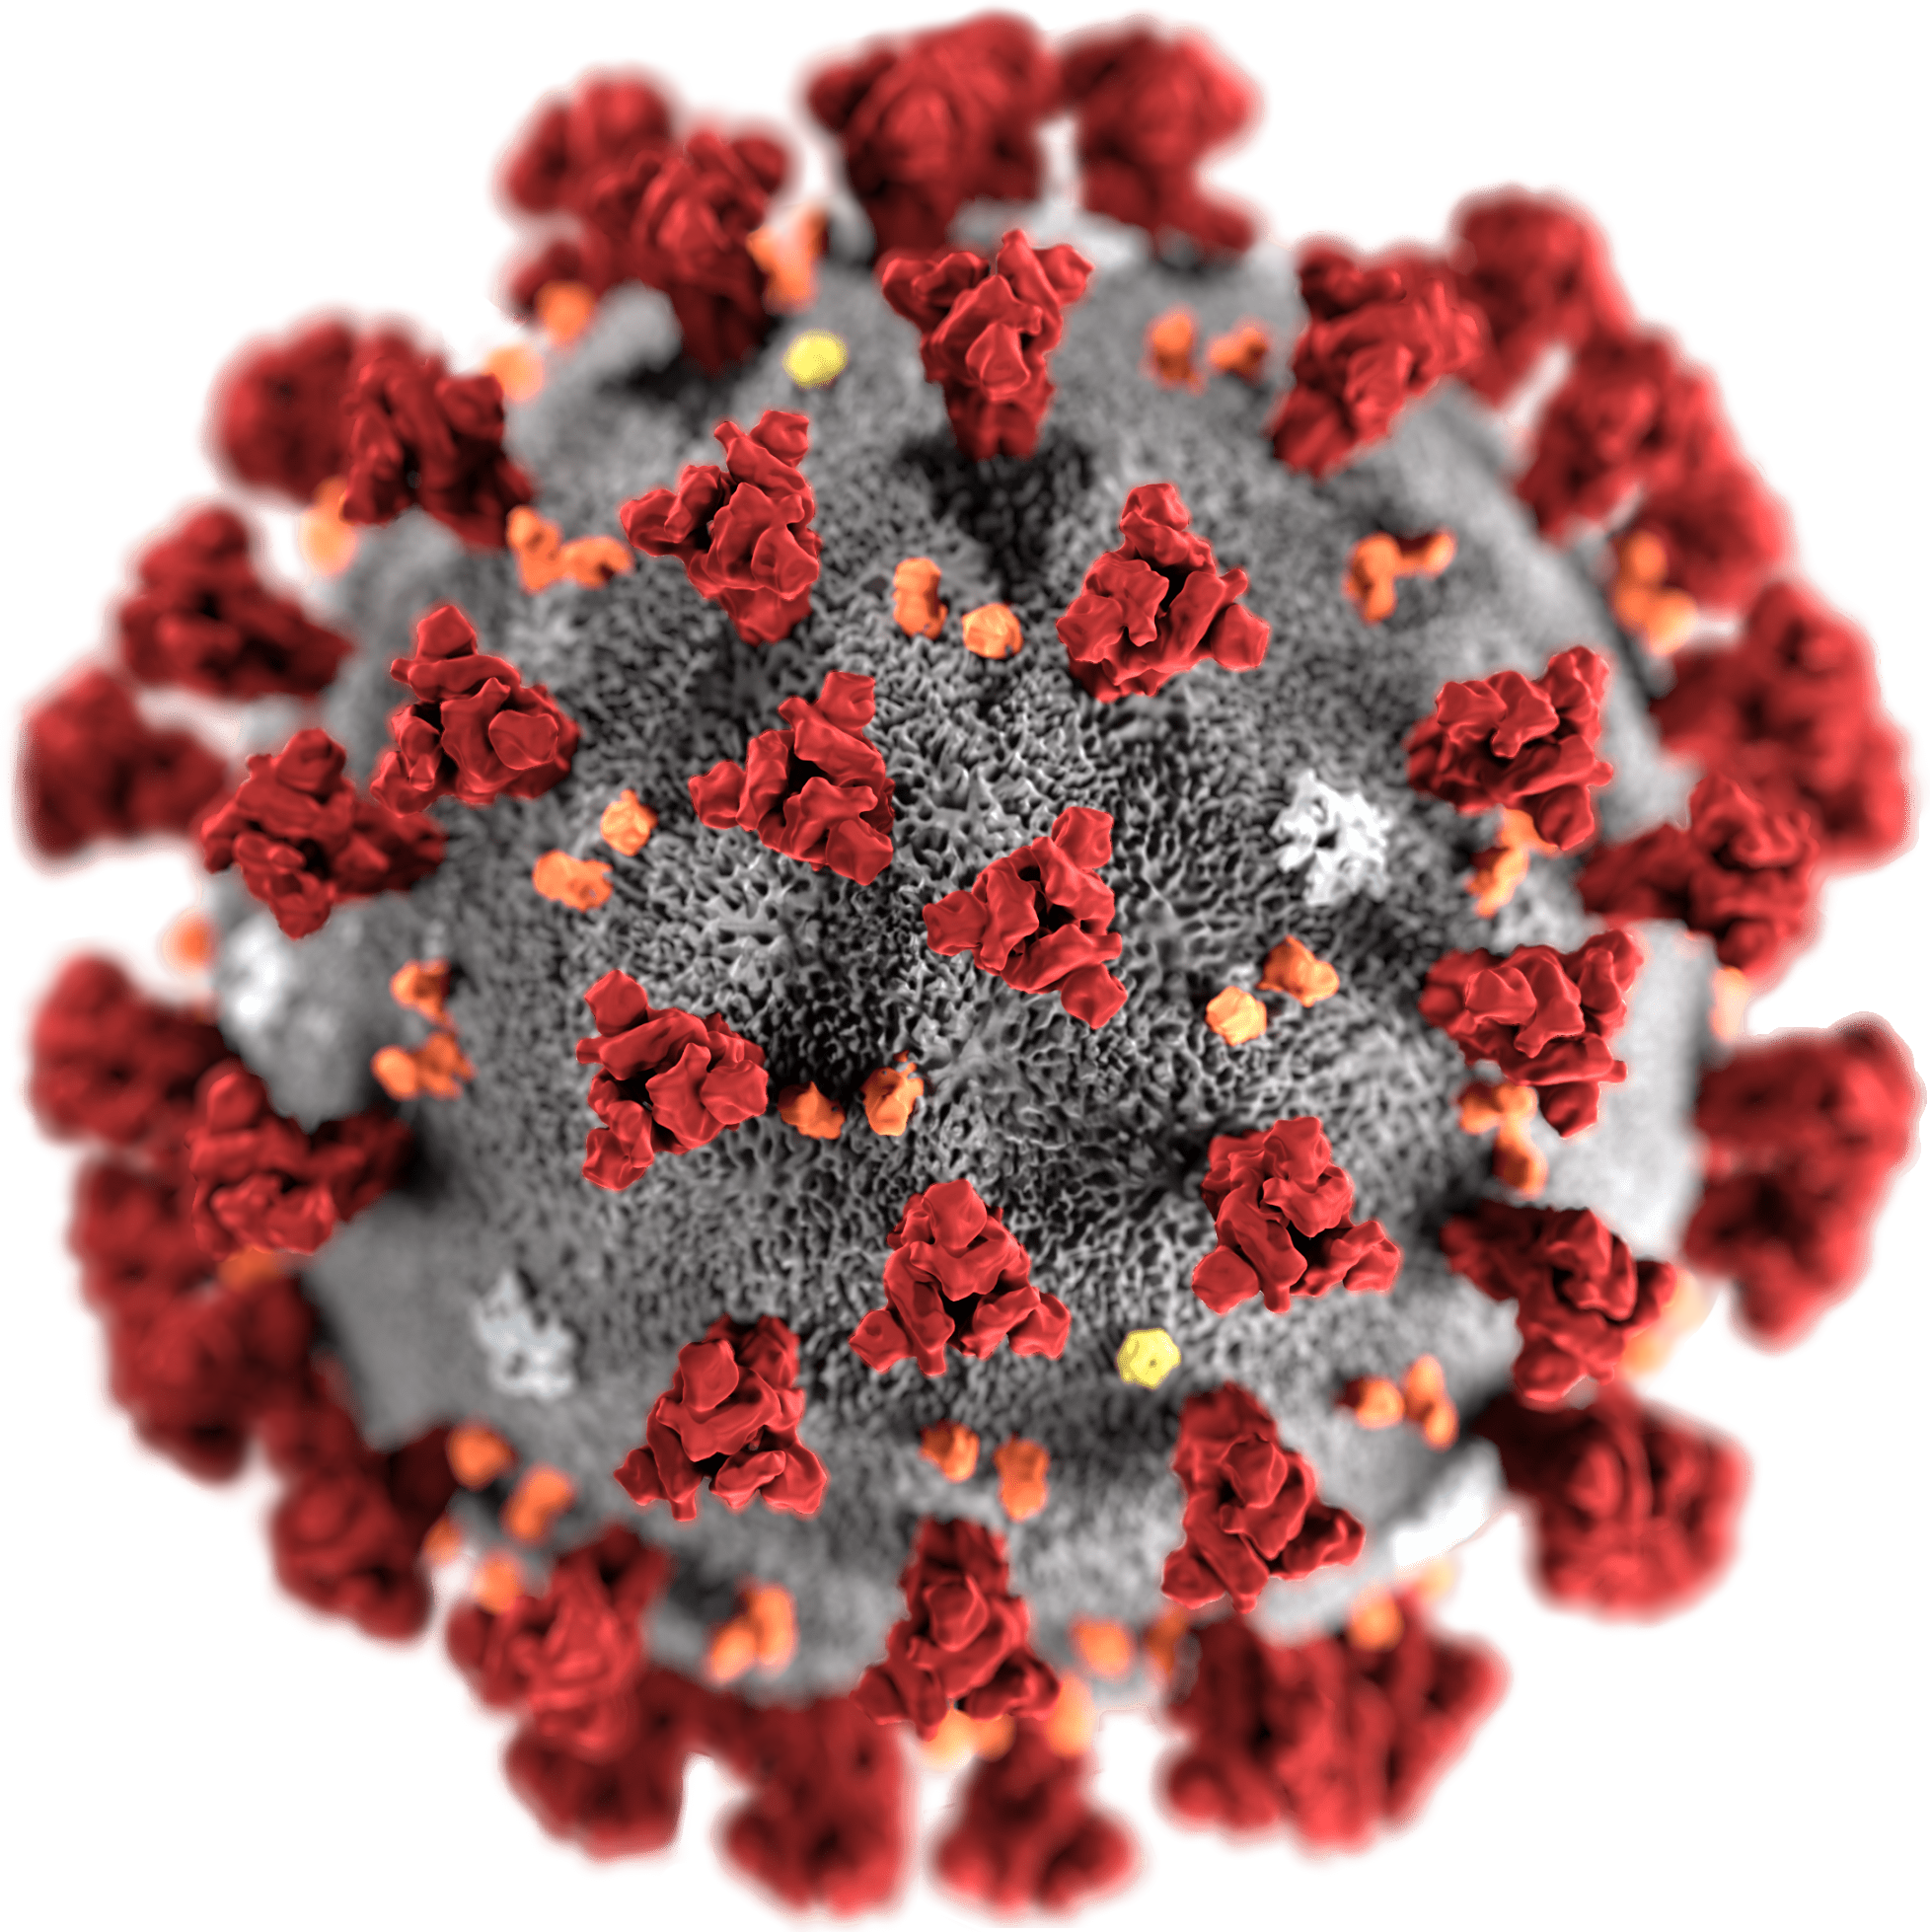 Corona Virus Package in R